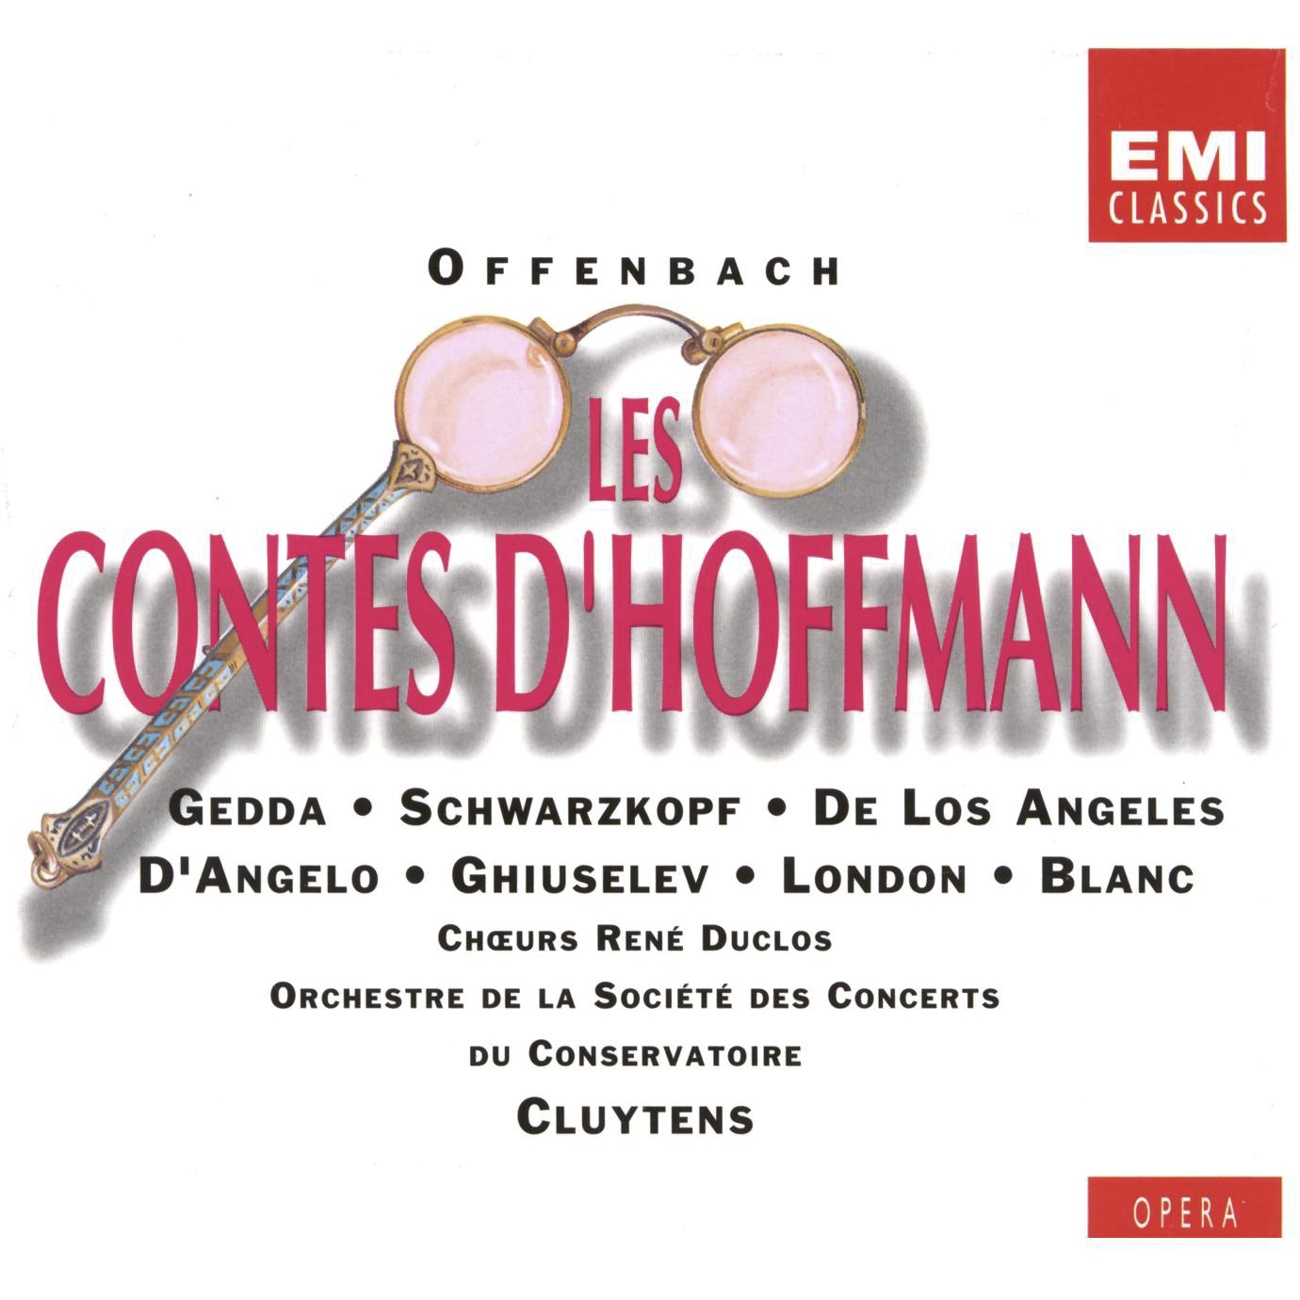 Les Contes d'Hoffmann (1989 Digital Remaster), PREMIER ACTE/ACT ONE/ERSTER AKT: Glou, glou, glou (Choeurs)